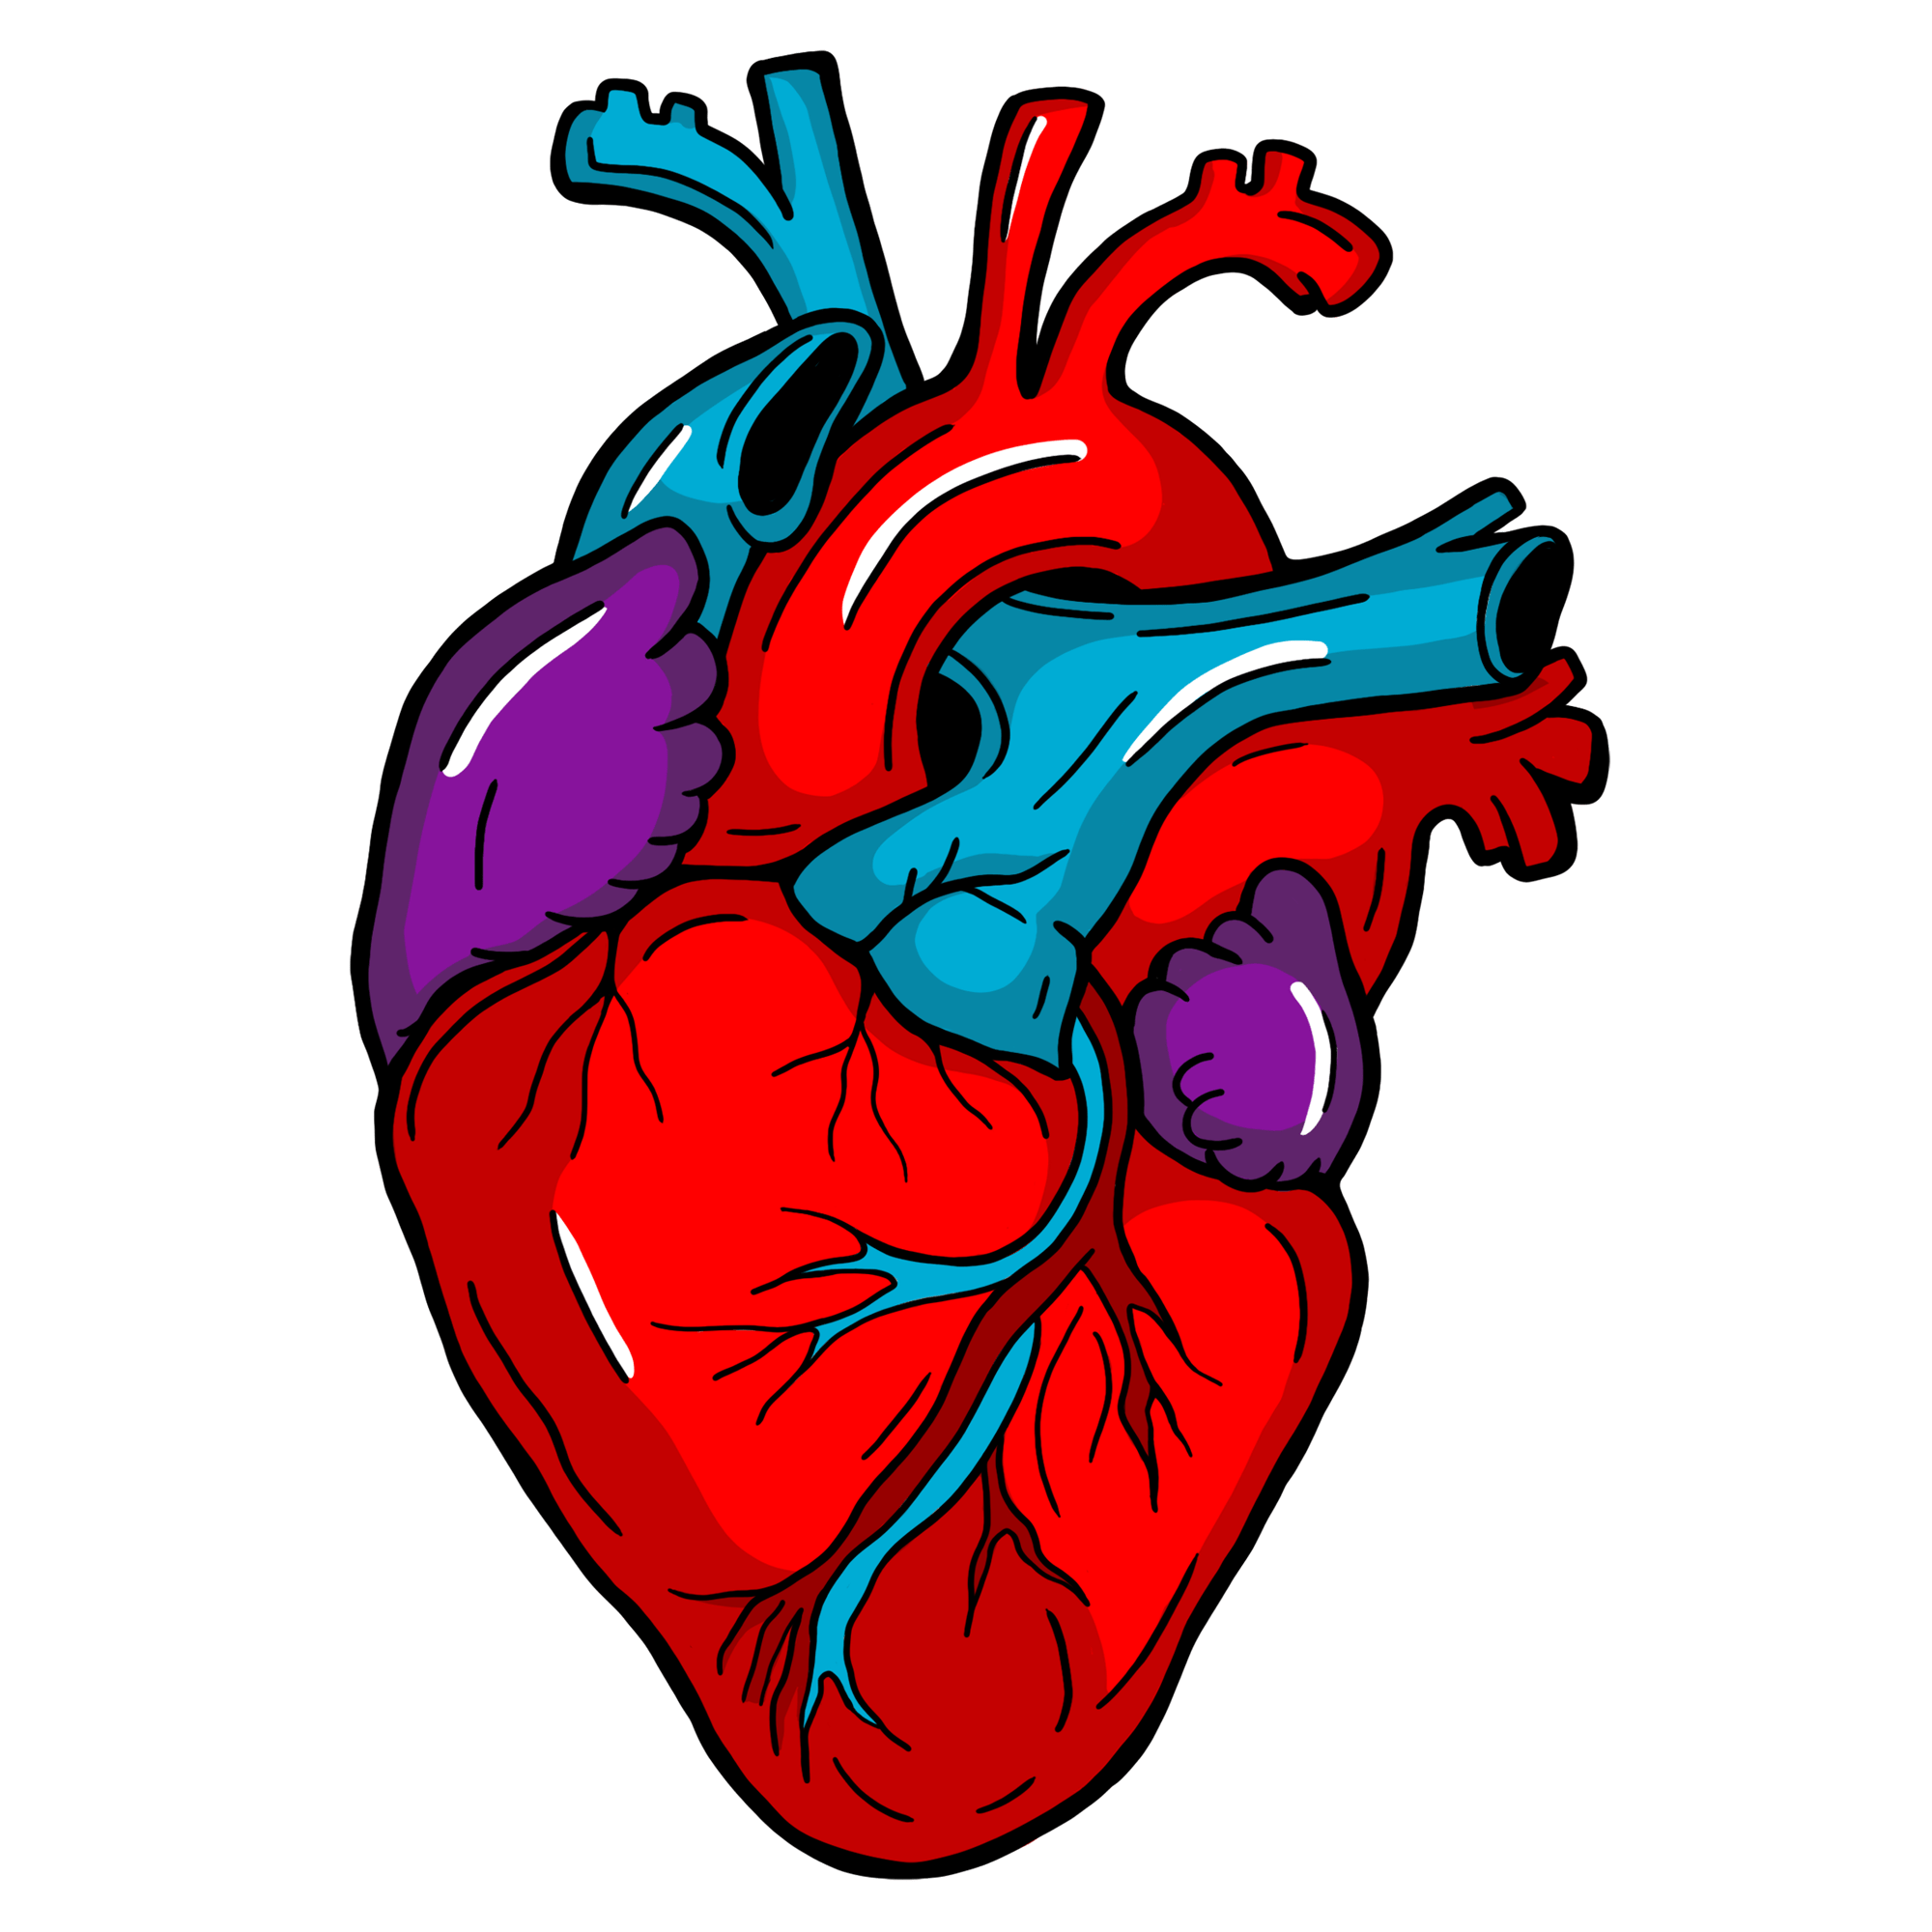 Illustriertes anatomisches Herz